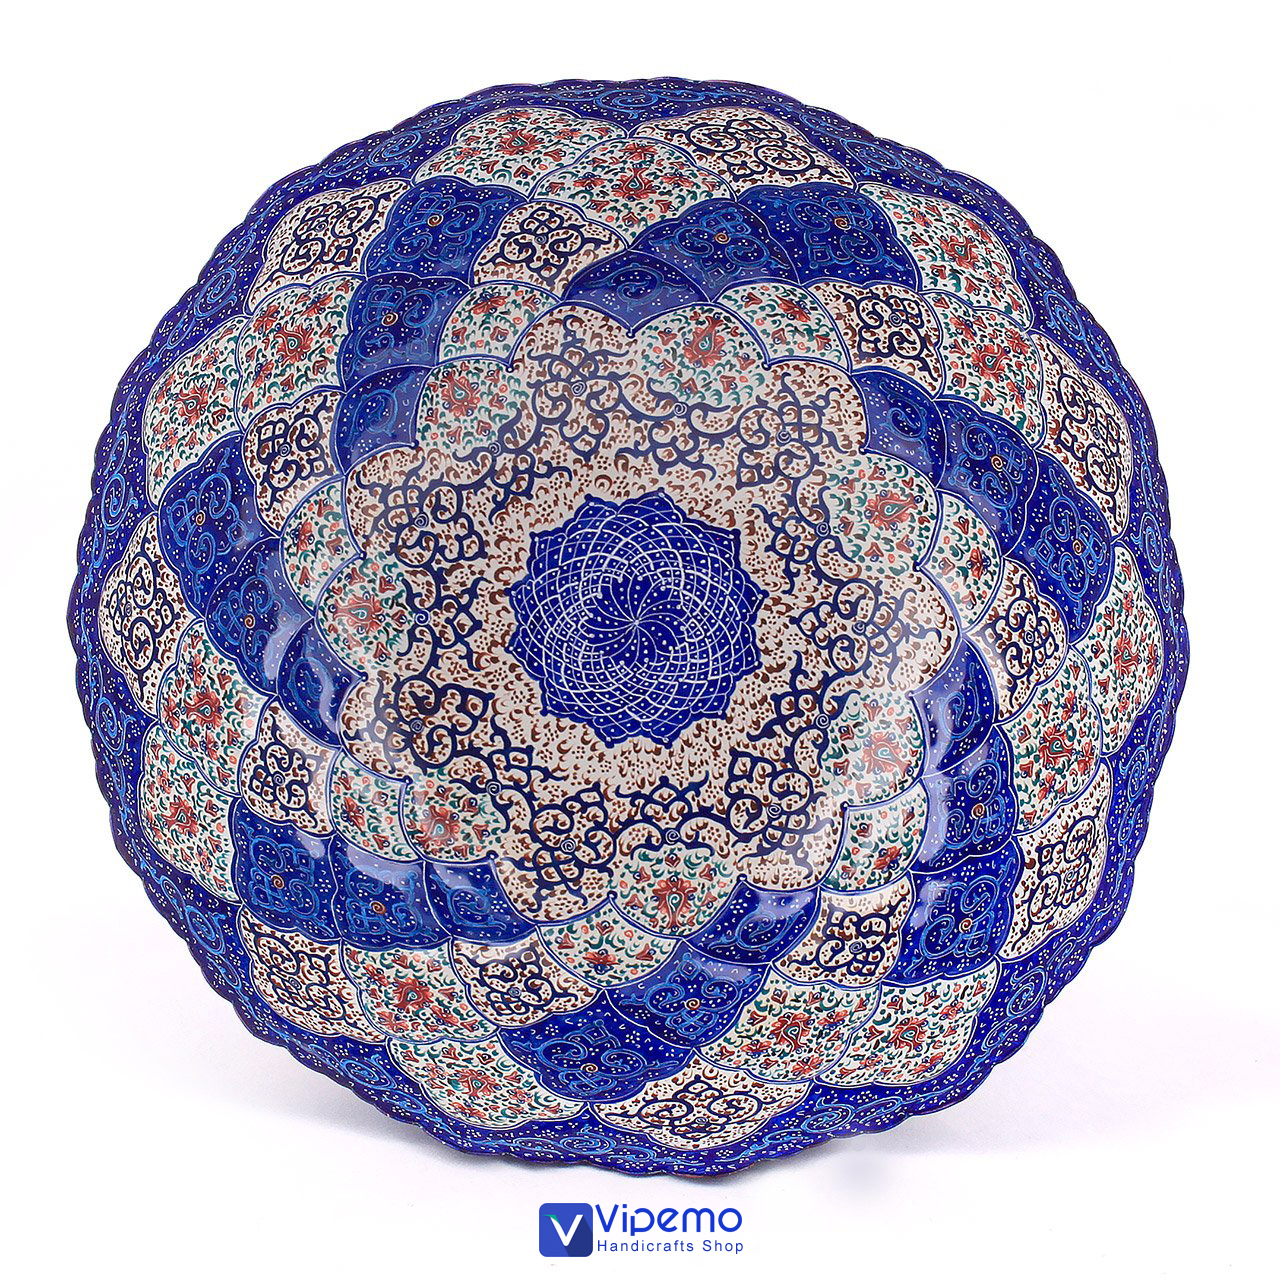 Minakari Iranian Handicrafts – Vipemo